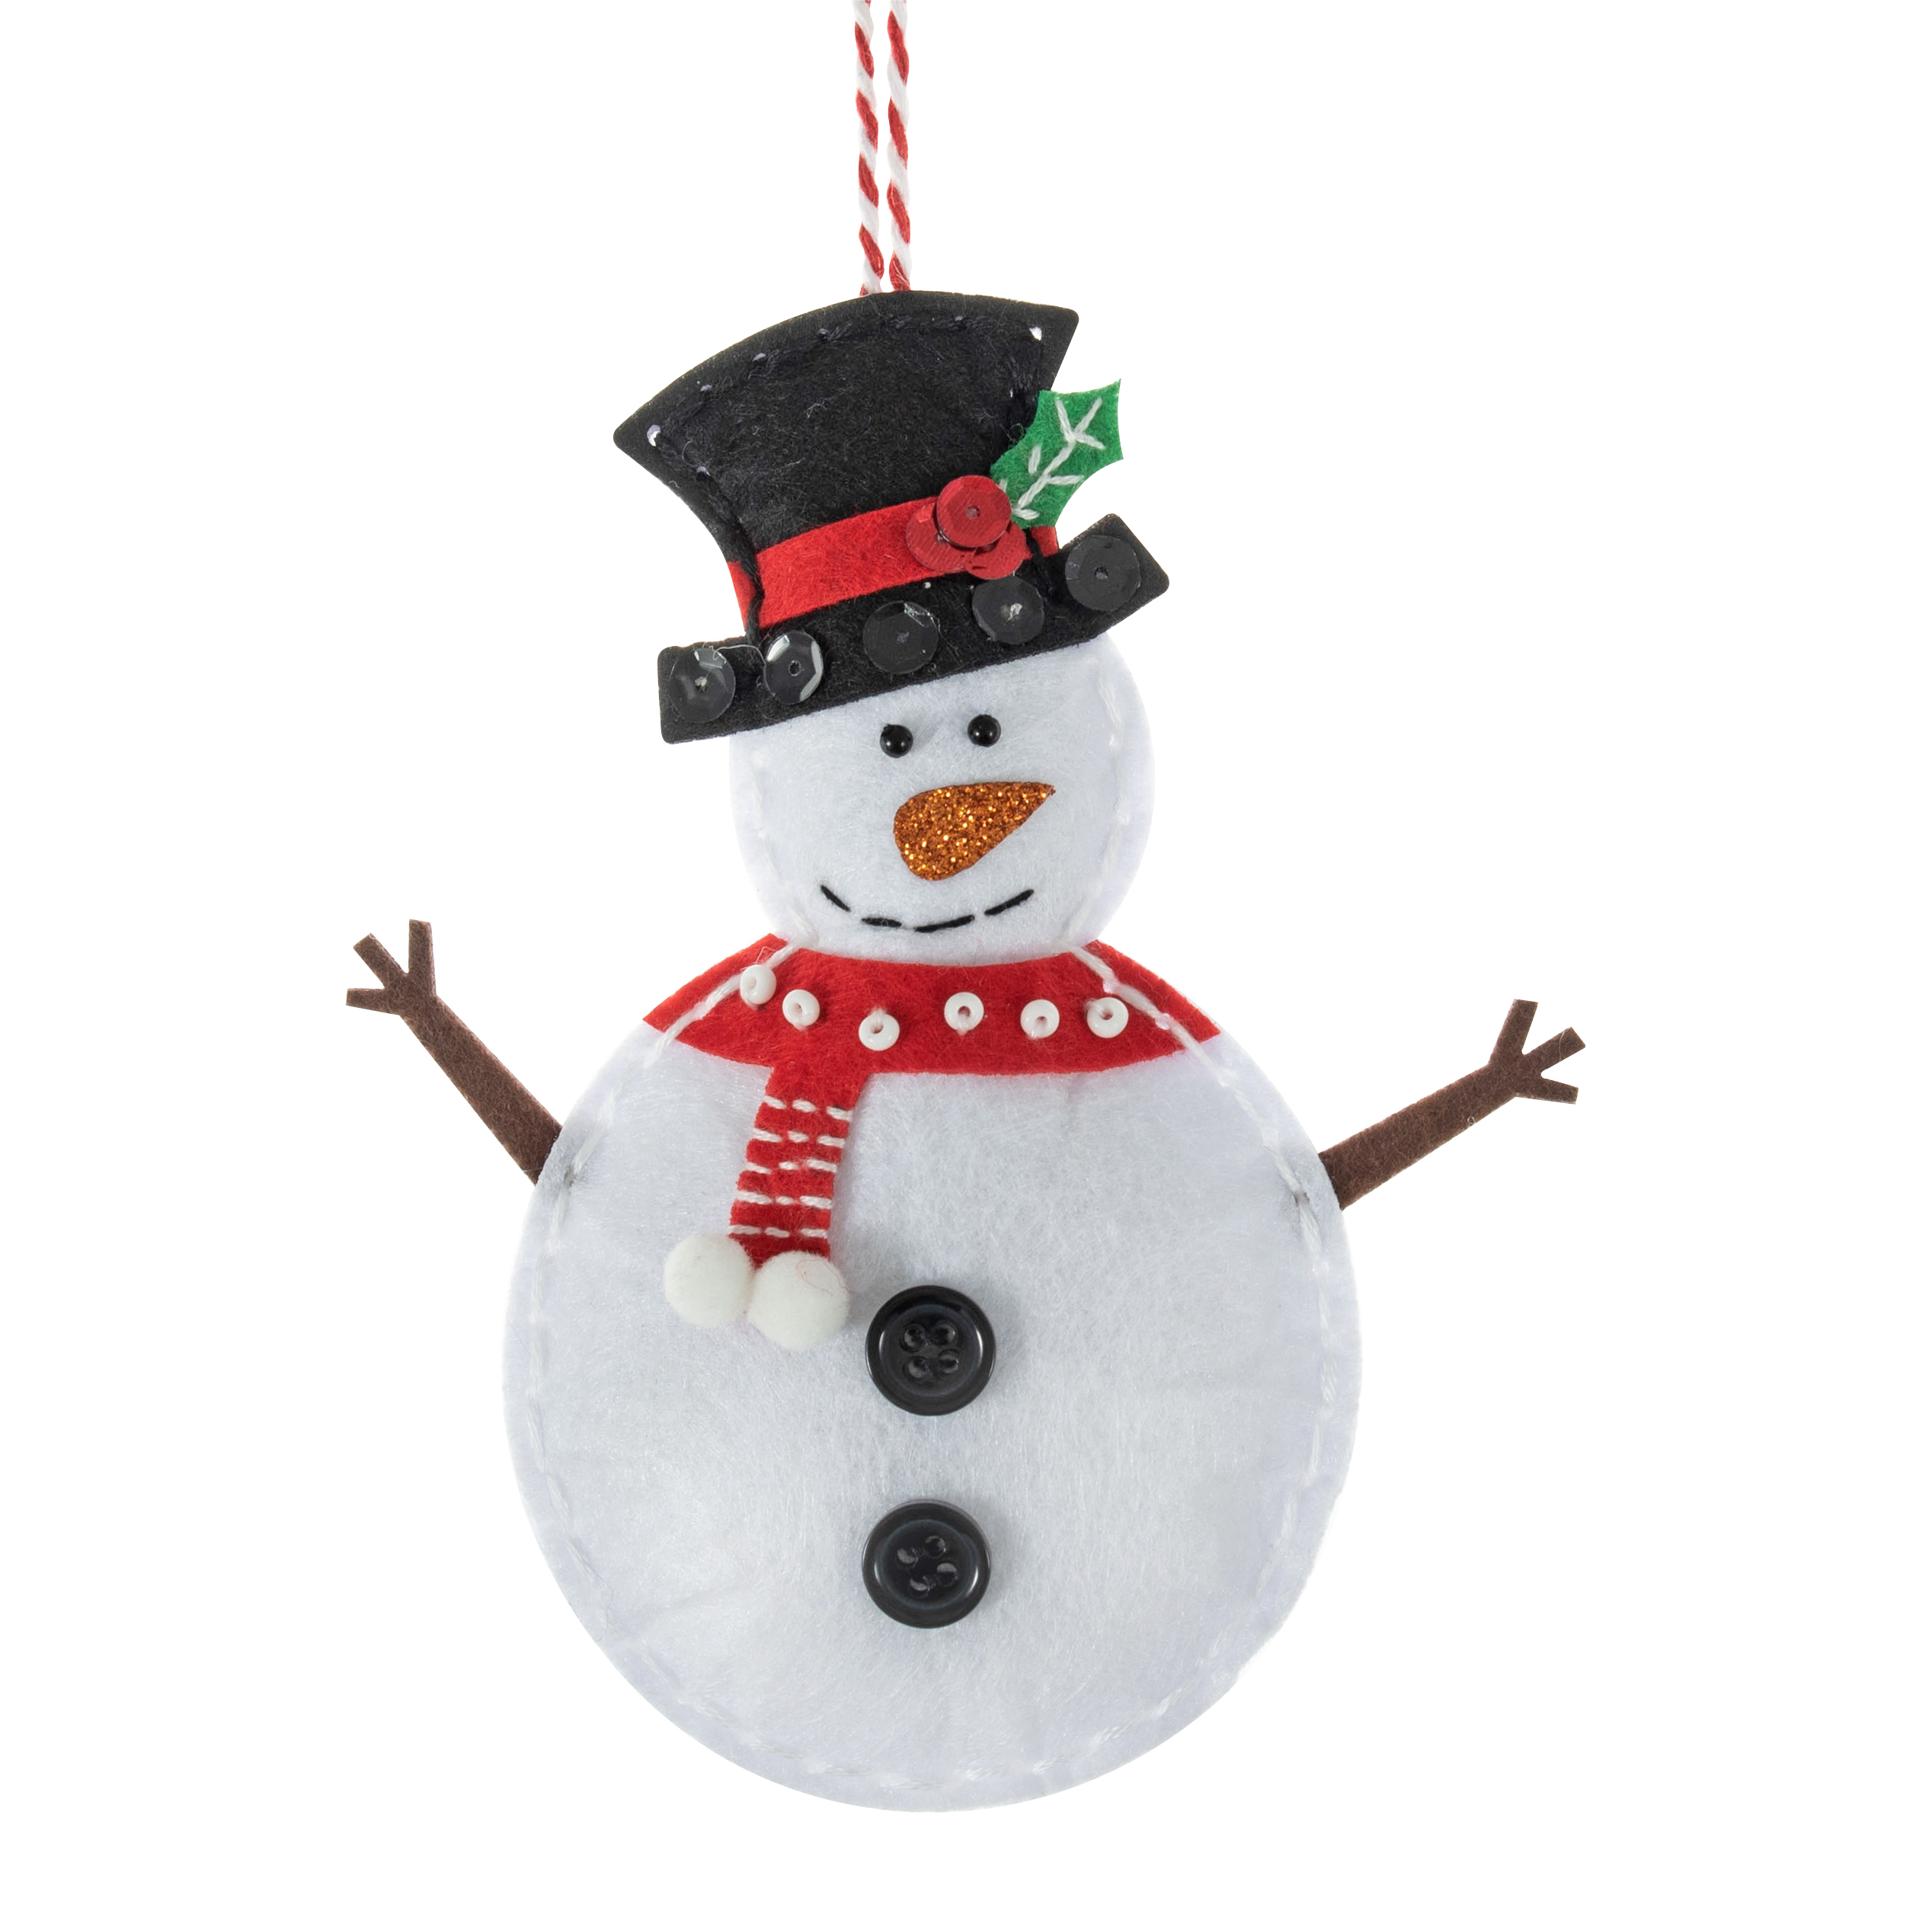 Felt Decoration Kit - Snowman